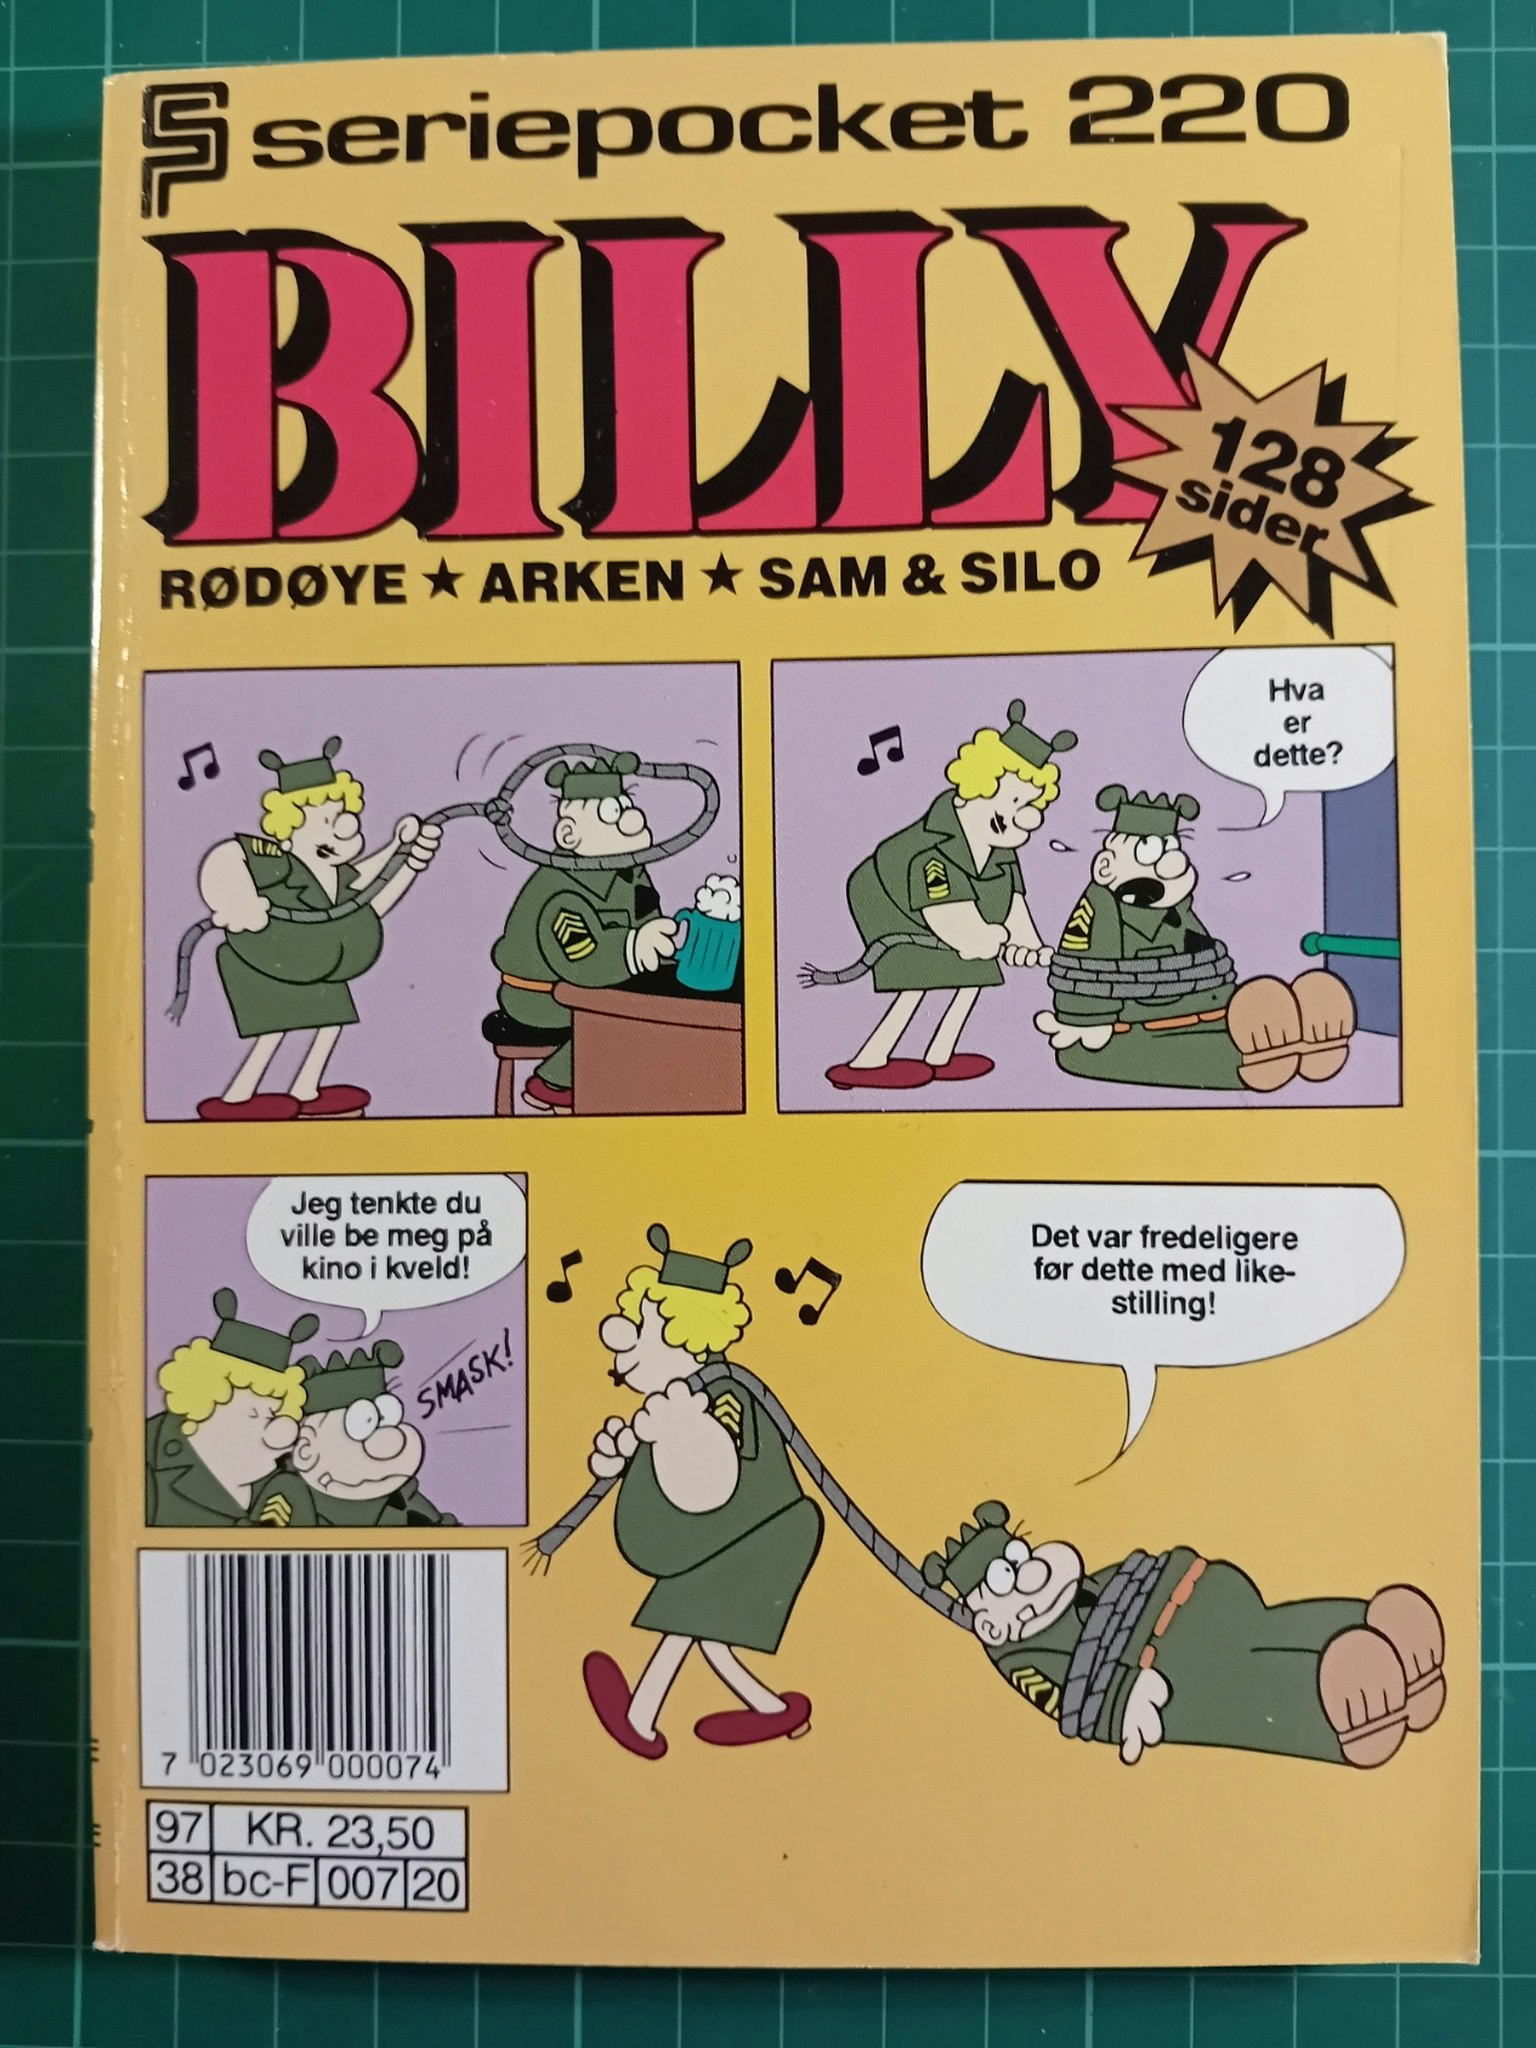 Serie-pocket 220 : Billy